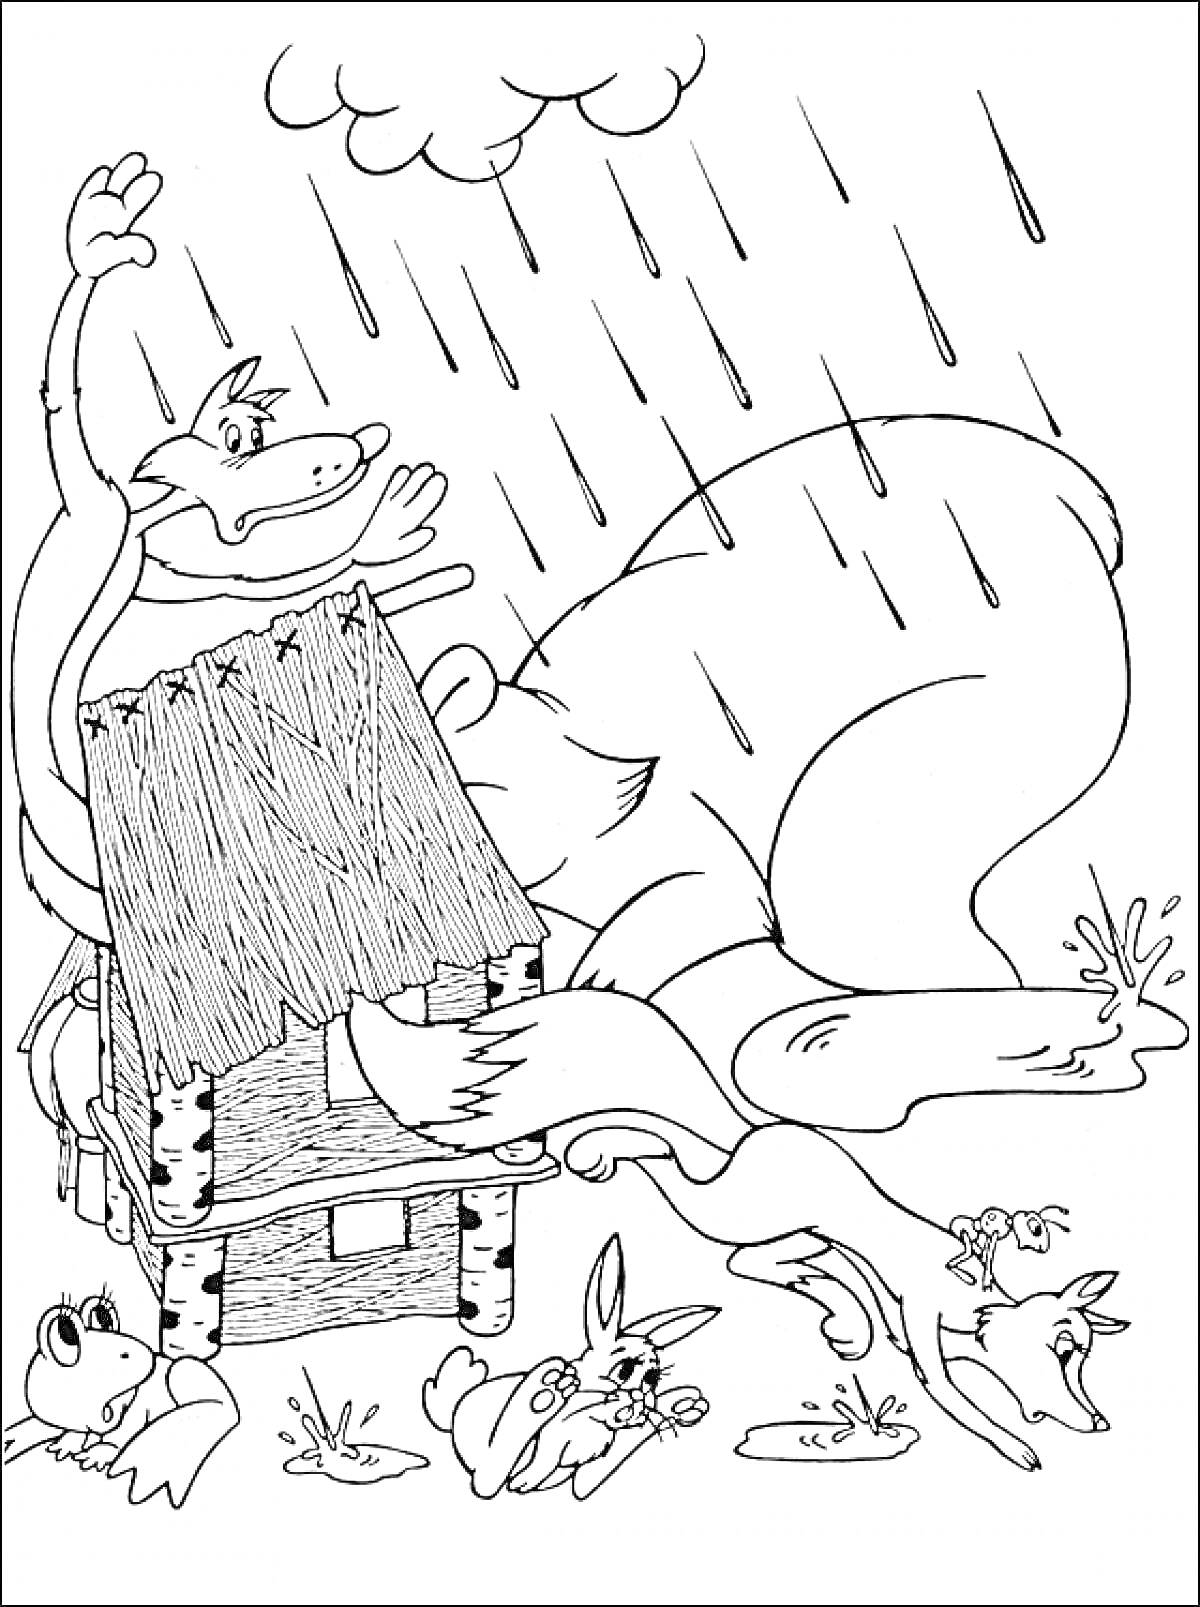 На раскраске изображено: Теремок, Медведь, Лиса, Заяц, Мышь, Дождь, Домик, Крыша, Лес, Бревно, Лягушки, Разрушения, Спасатели